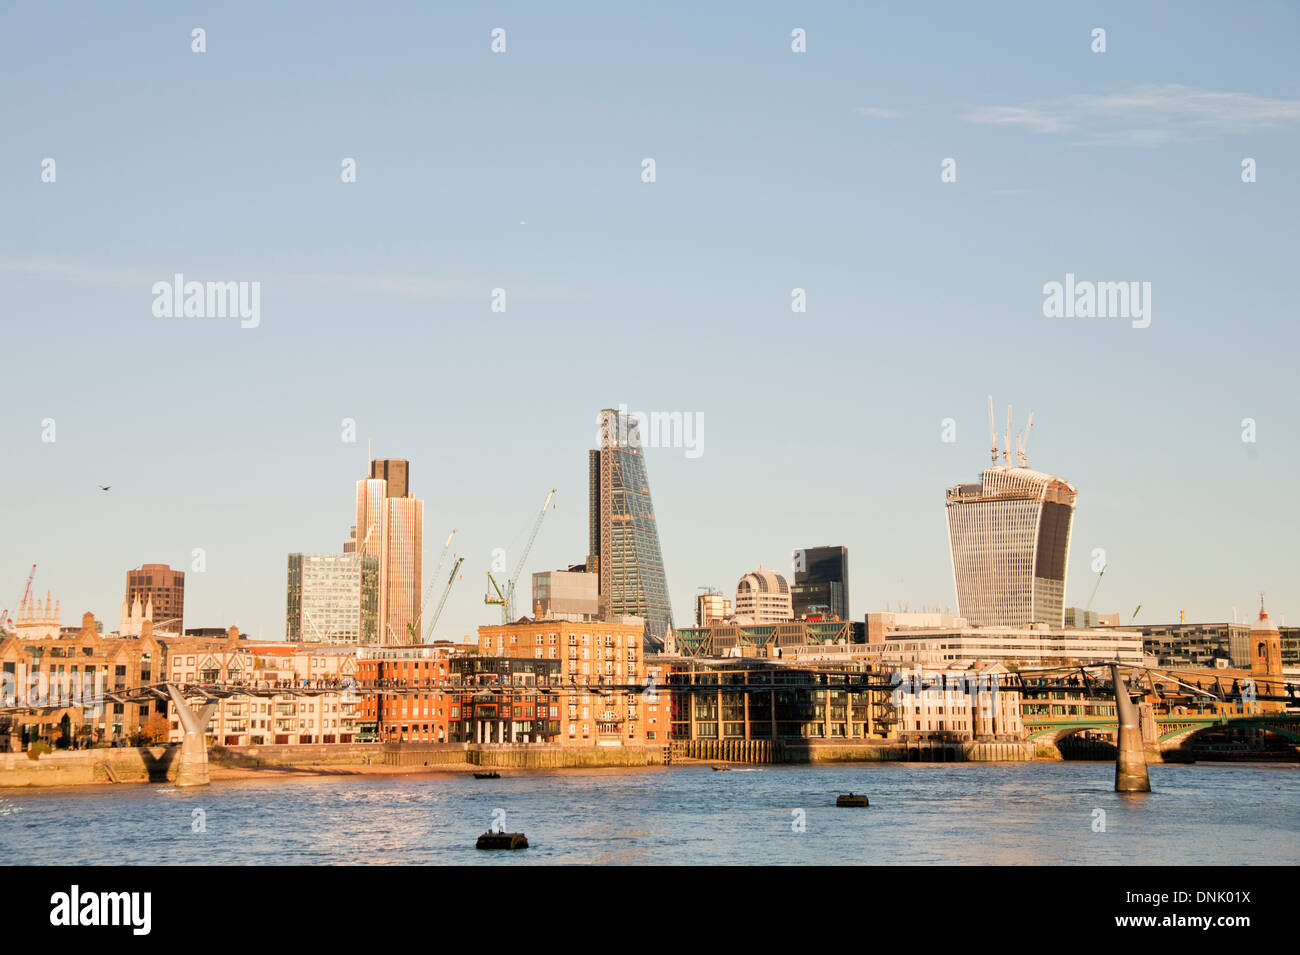 Die Skyline der City of London zeigt Tower 42 und dem Leadenhall Building, London, England, Vereinigtes Königreich Stockfoto